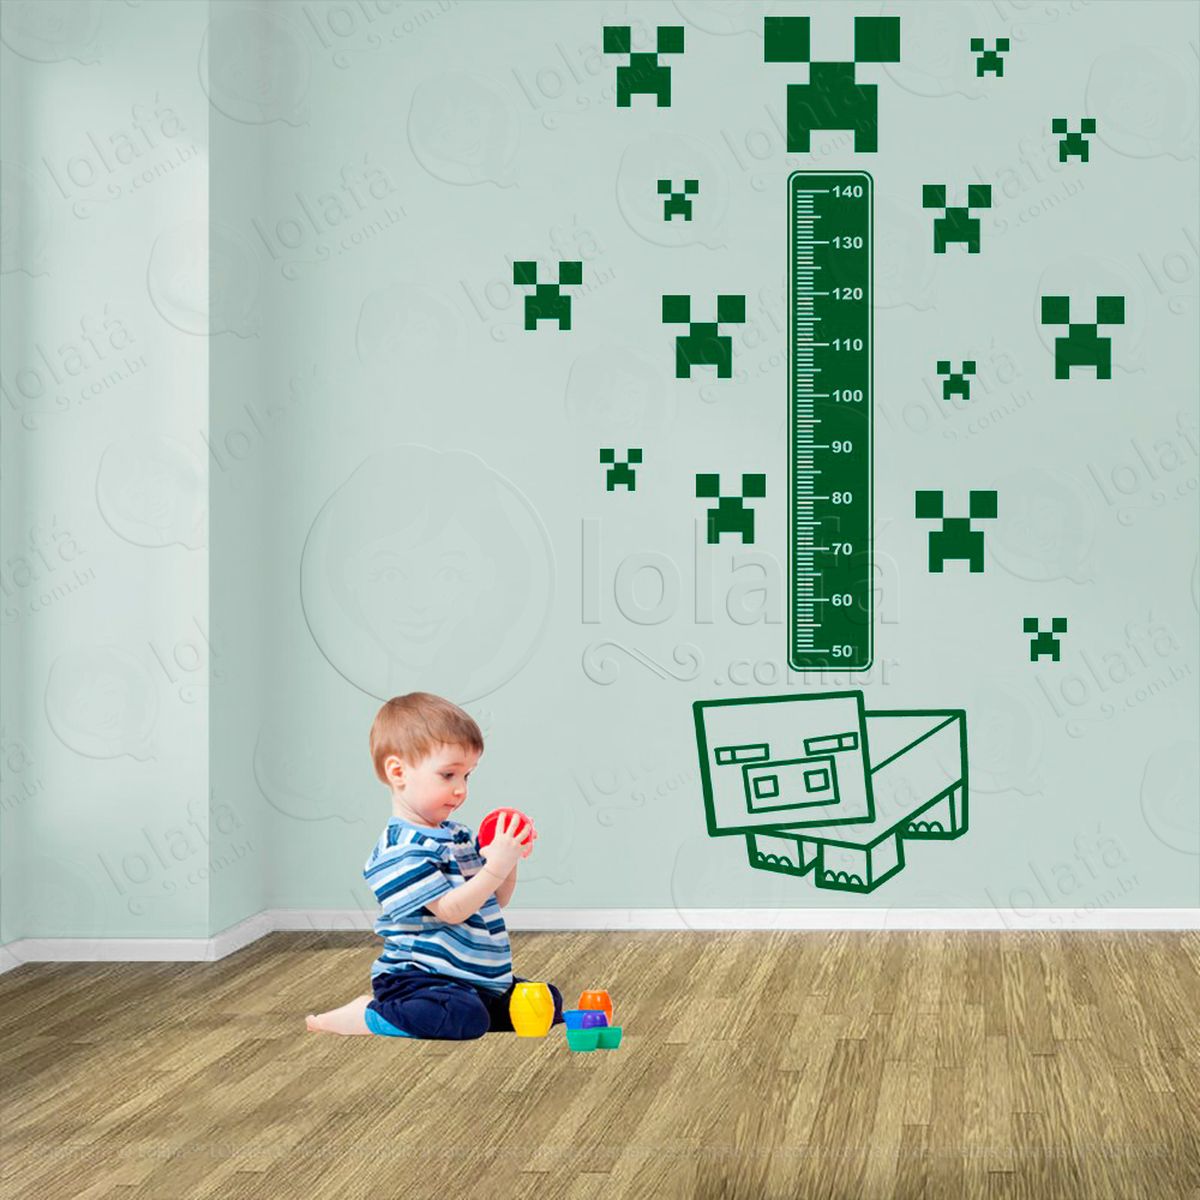 minecraft e minecraft adesivo régua de crescimento infantil, medidor de altura para quarto, porta e parede - mod:746